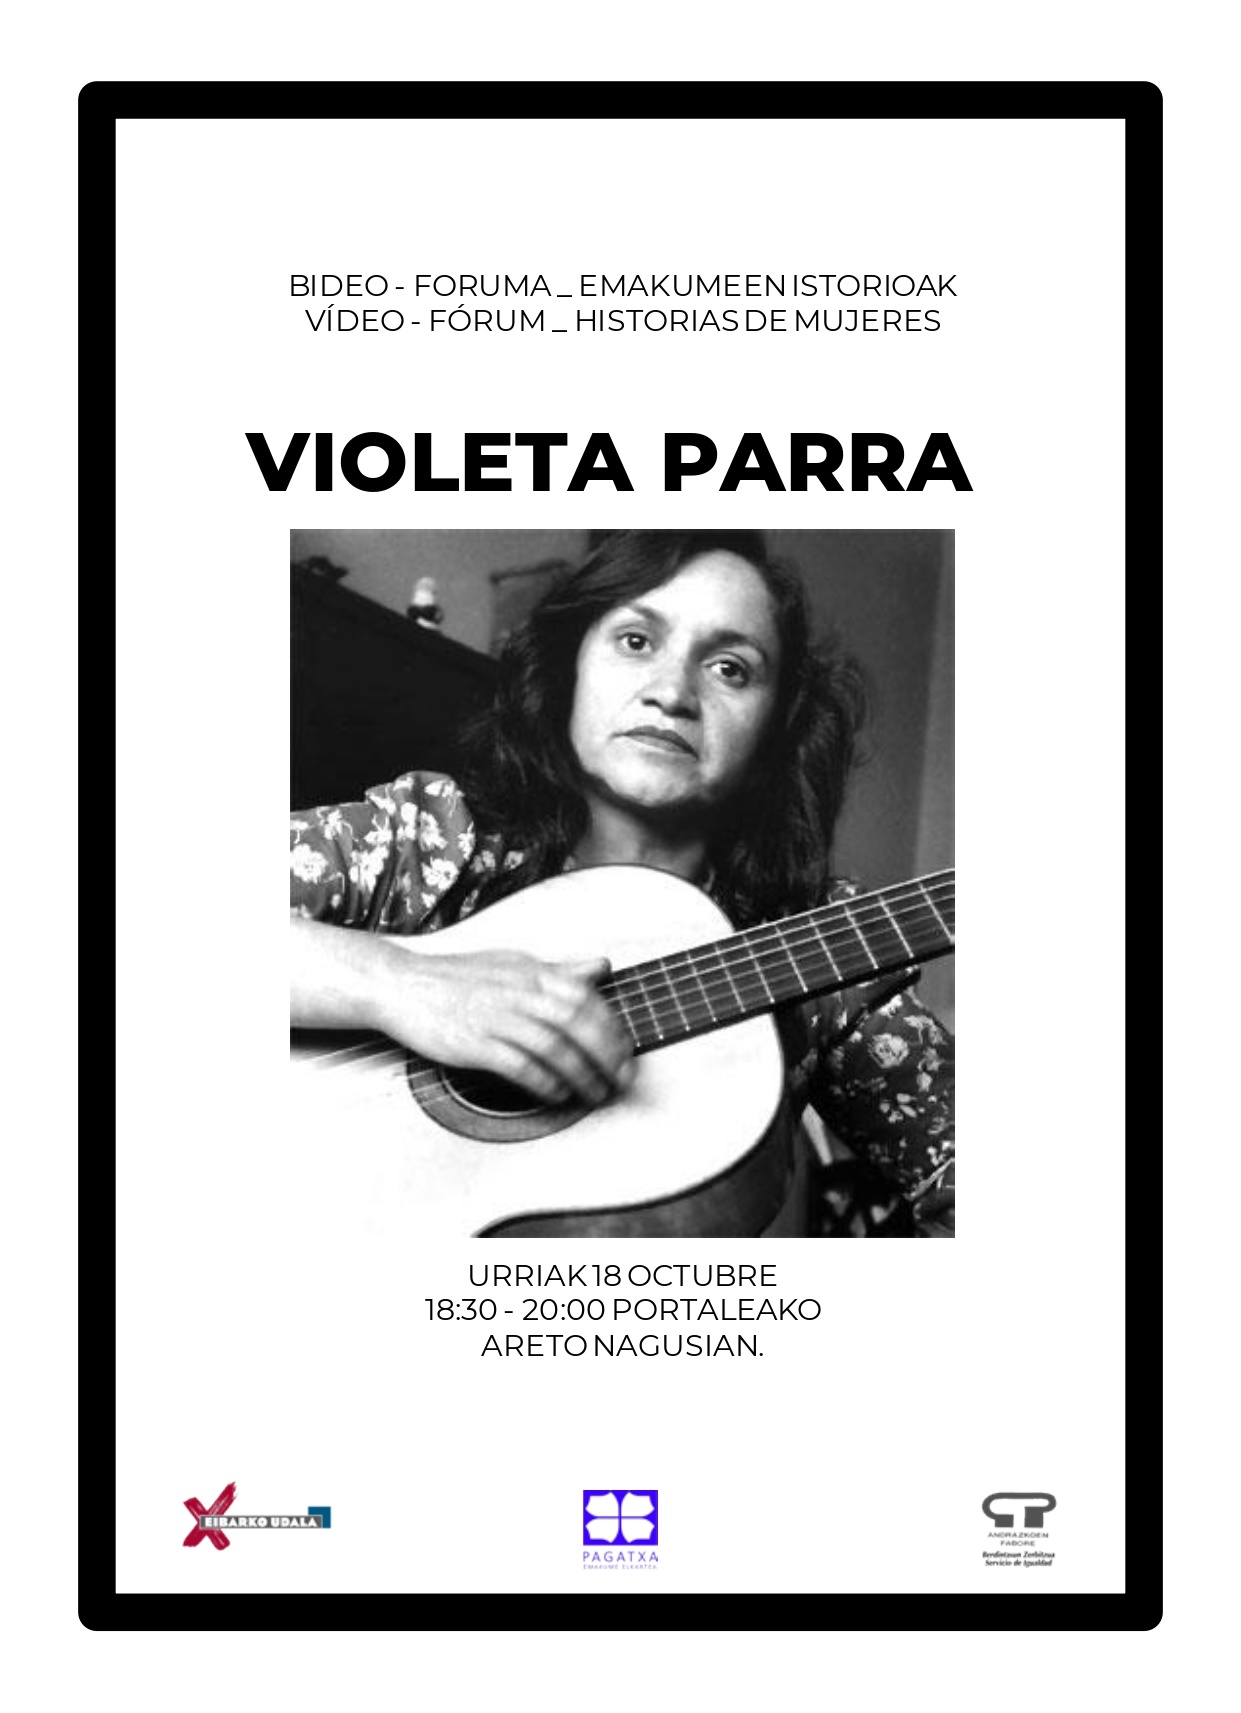 Video Forum de Historias de mujeres: Violeta Parra